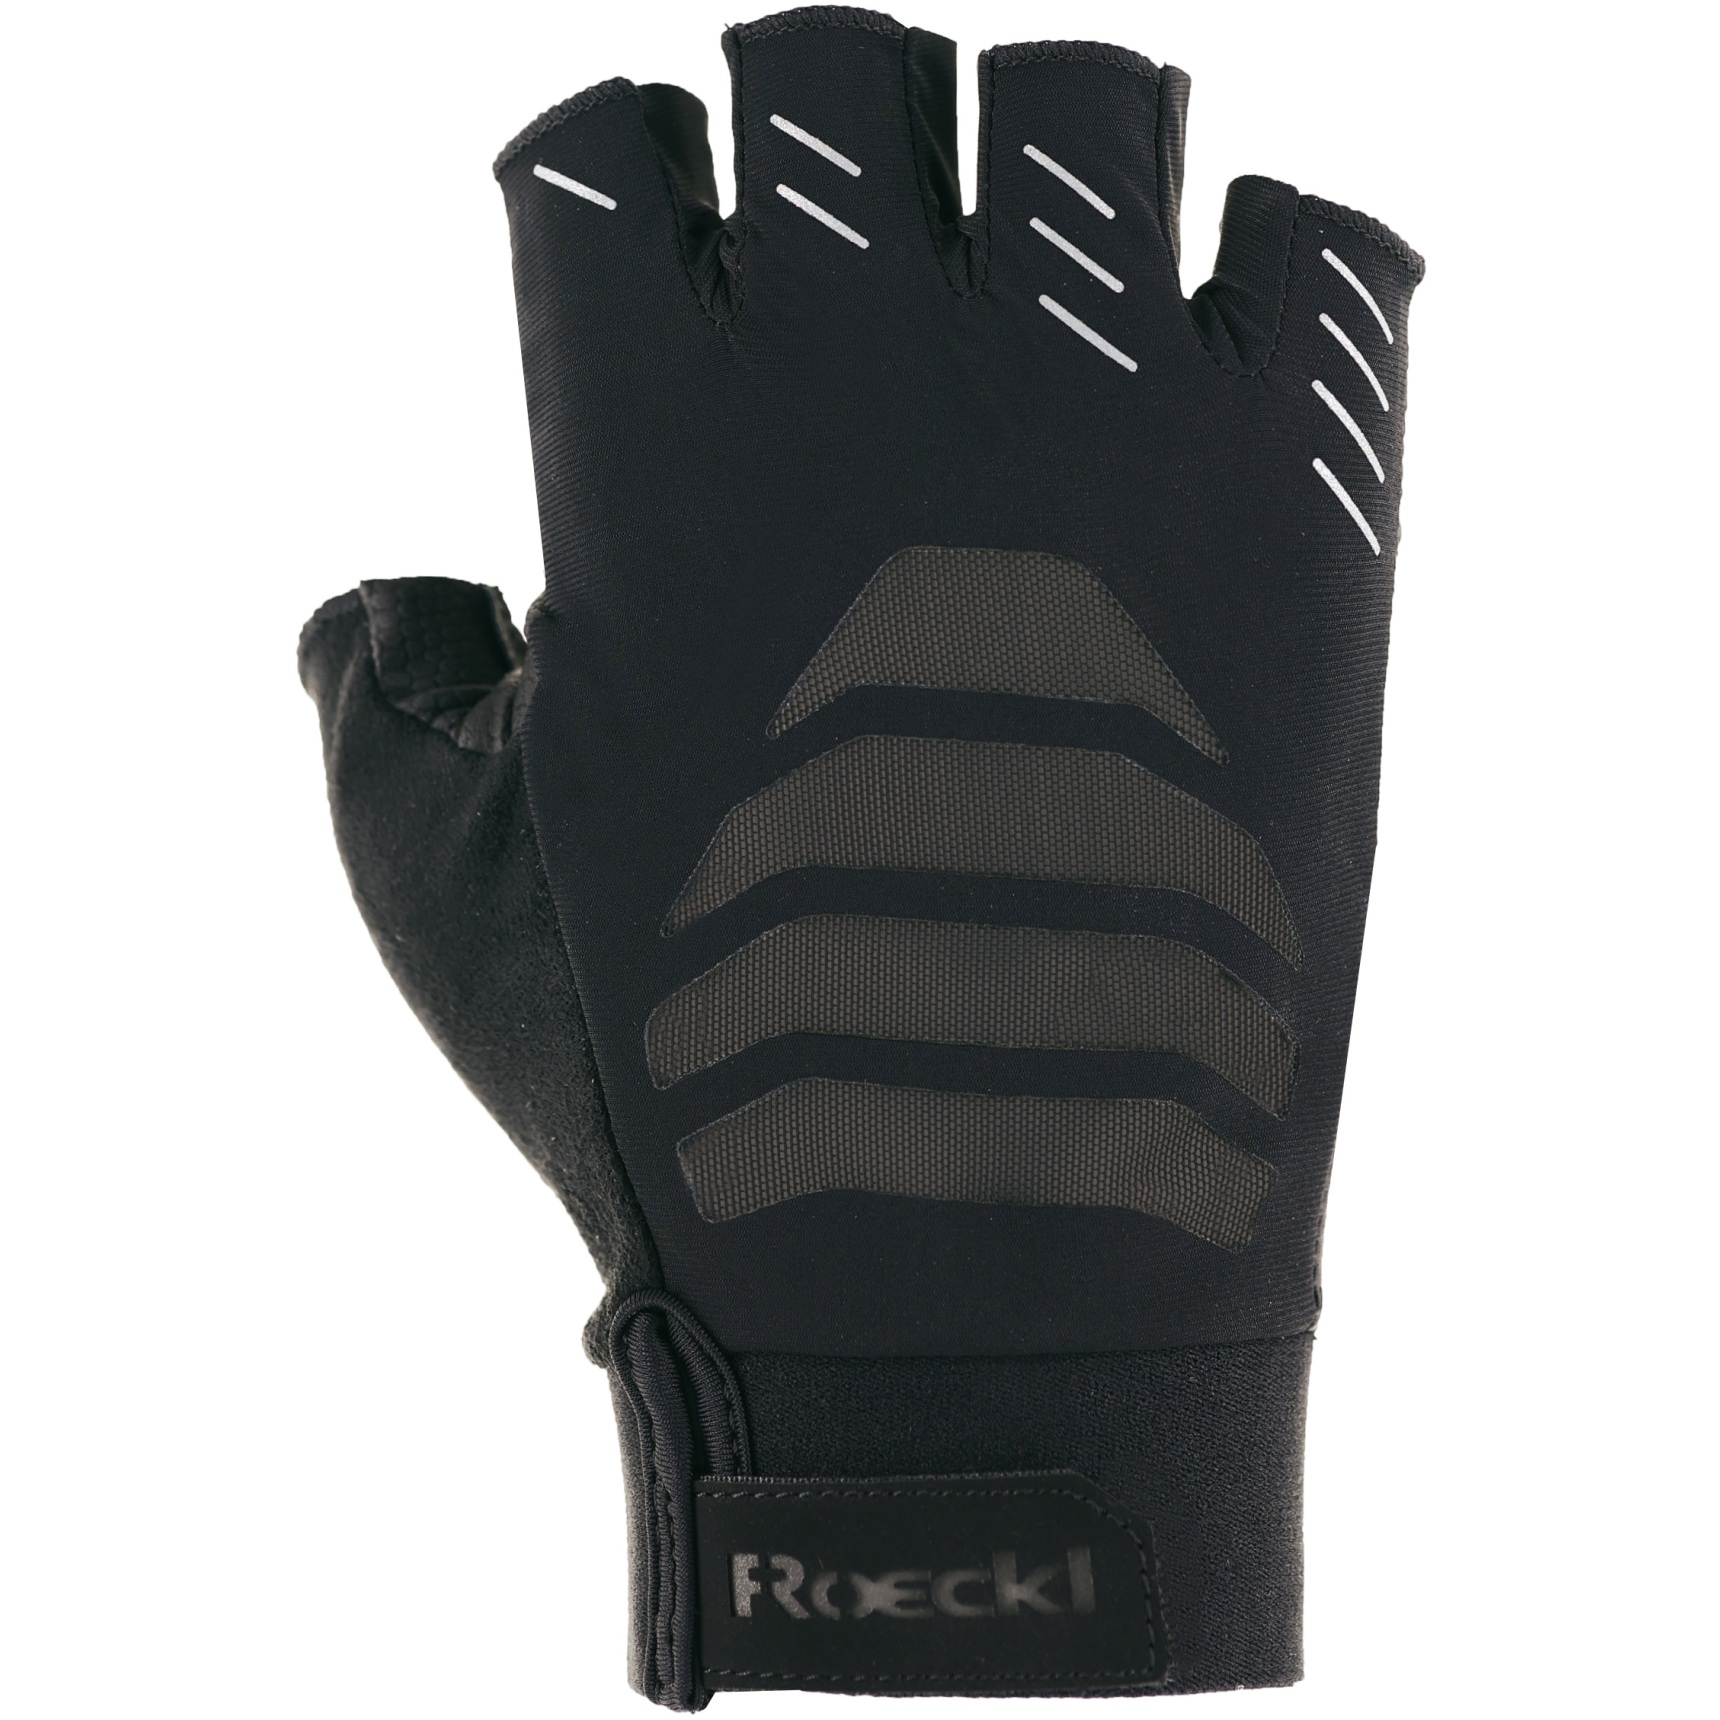 Productfoto van Roeckl Sports Irai Fietshandschoenen - zwart 9000